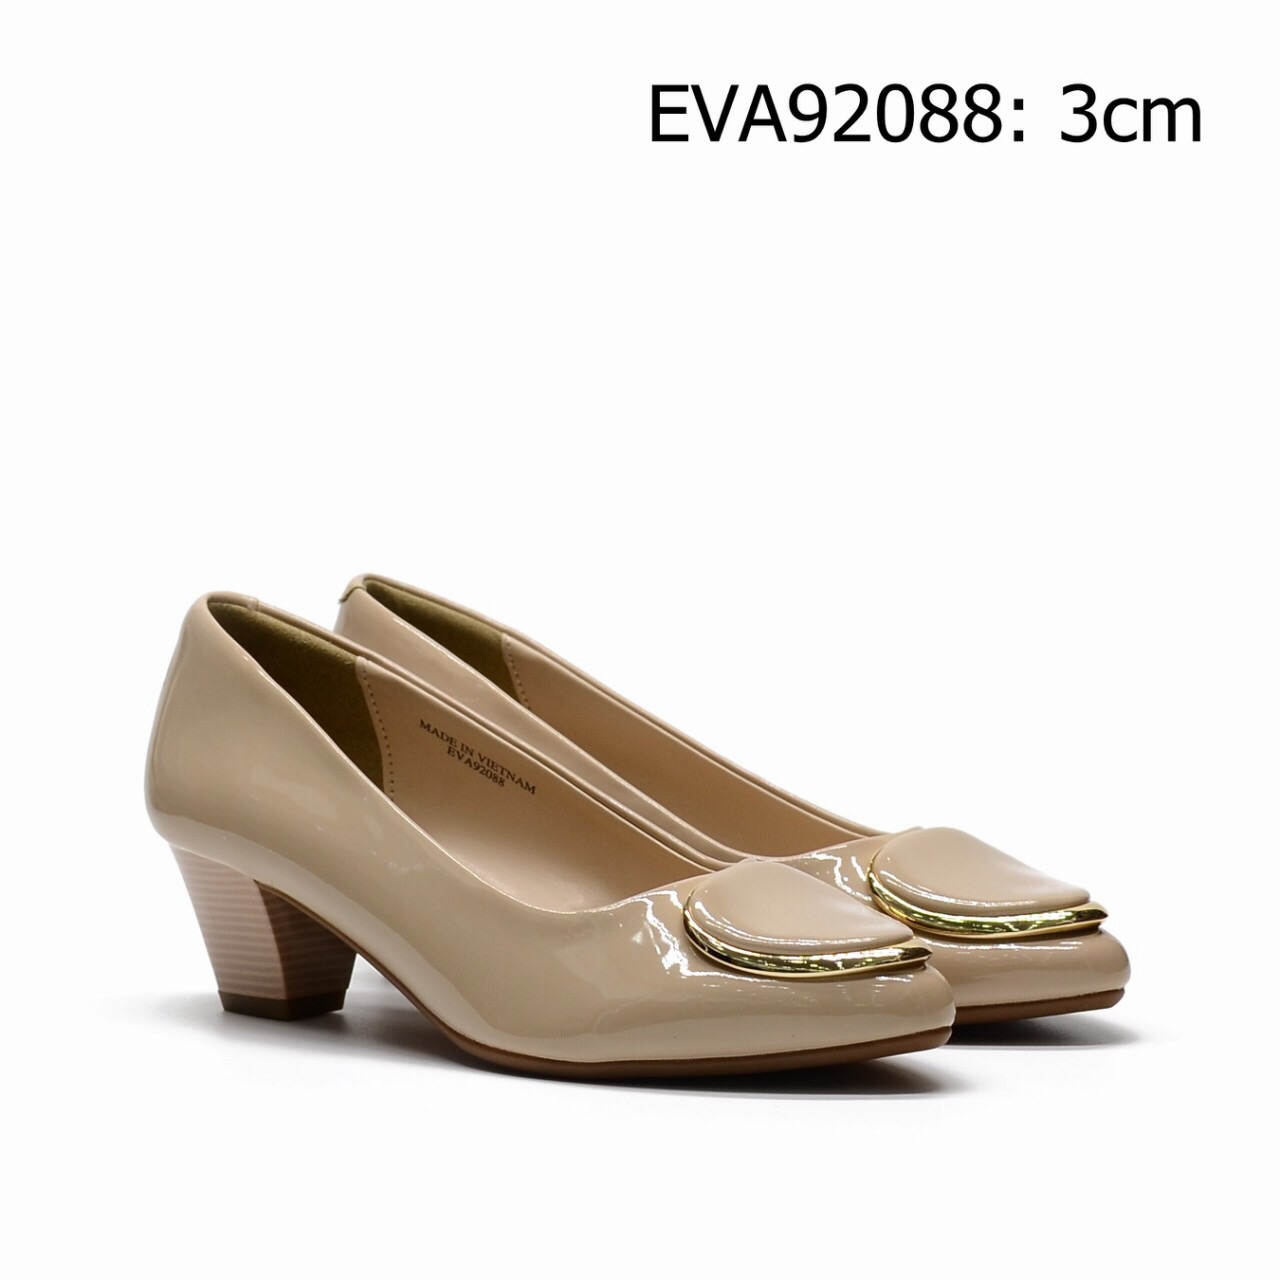 Giày công sở EVA92088 thiết kế da bóng trẻ trung kết hợp nơ kim loại nổi bật, sang trọng